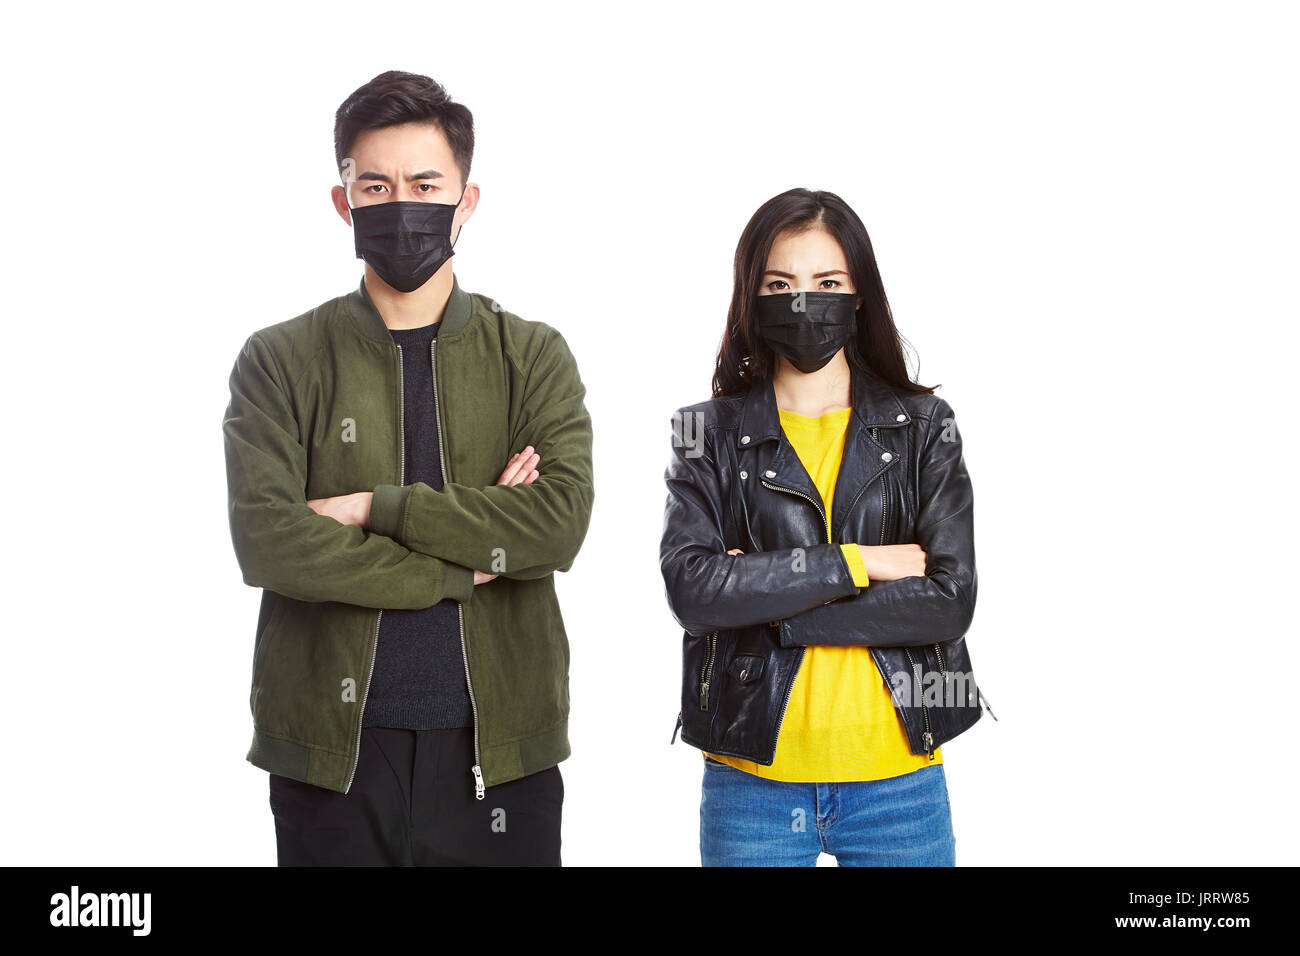 Jungen asiatischen Mann und Frau tragen schwarze Maske auf Kamera runzelte die Stirn, auf weißem Hintergrund. Stockfoto